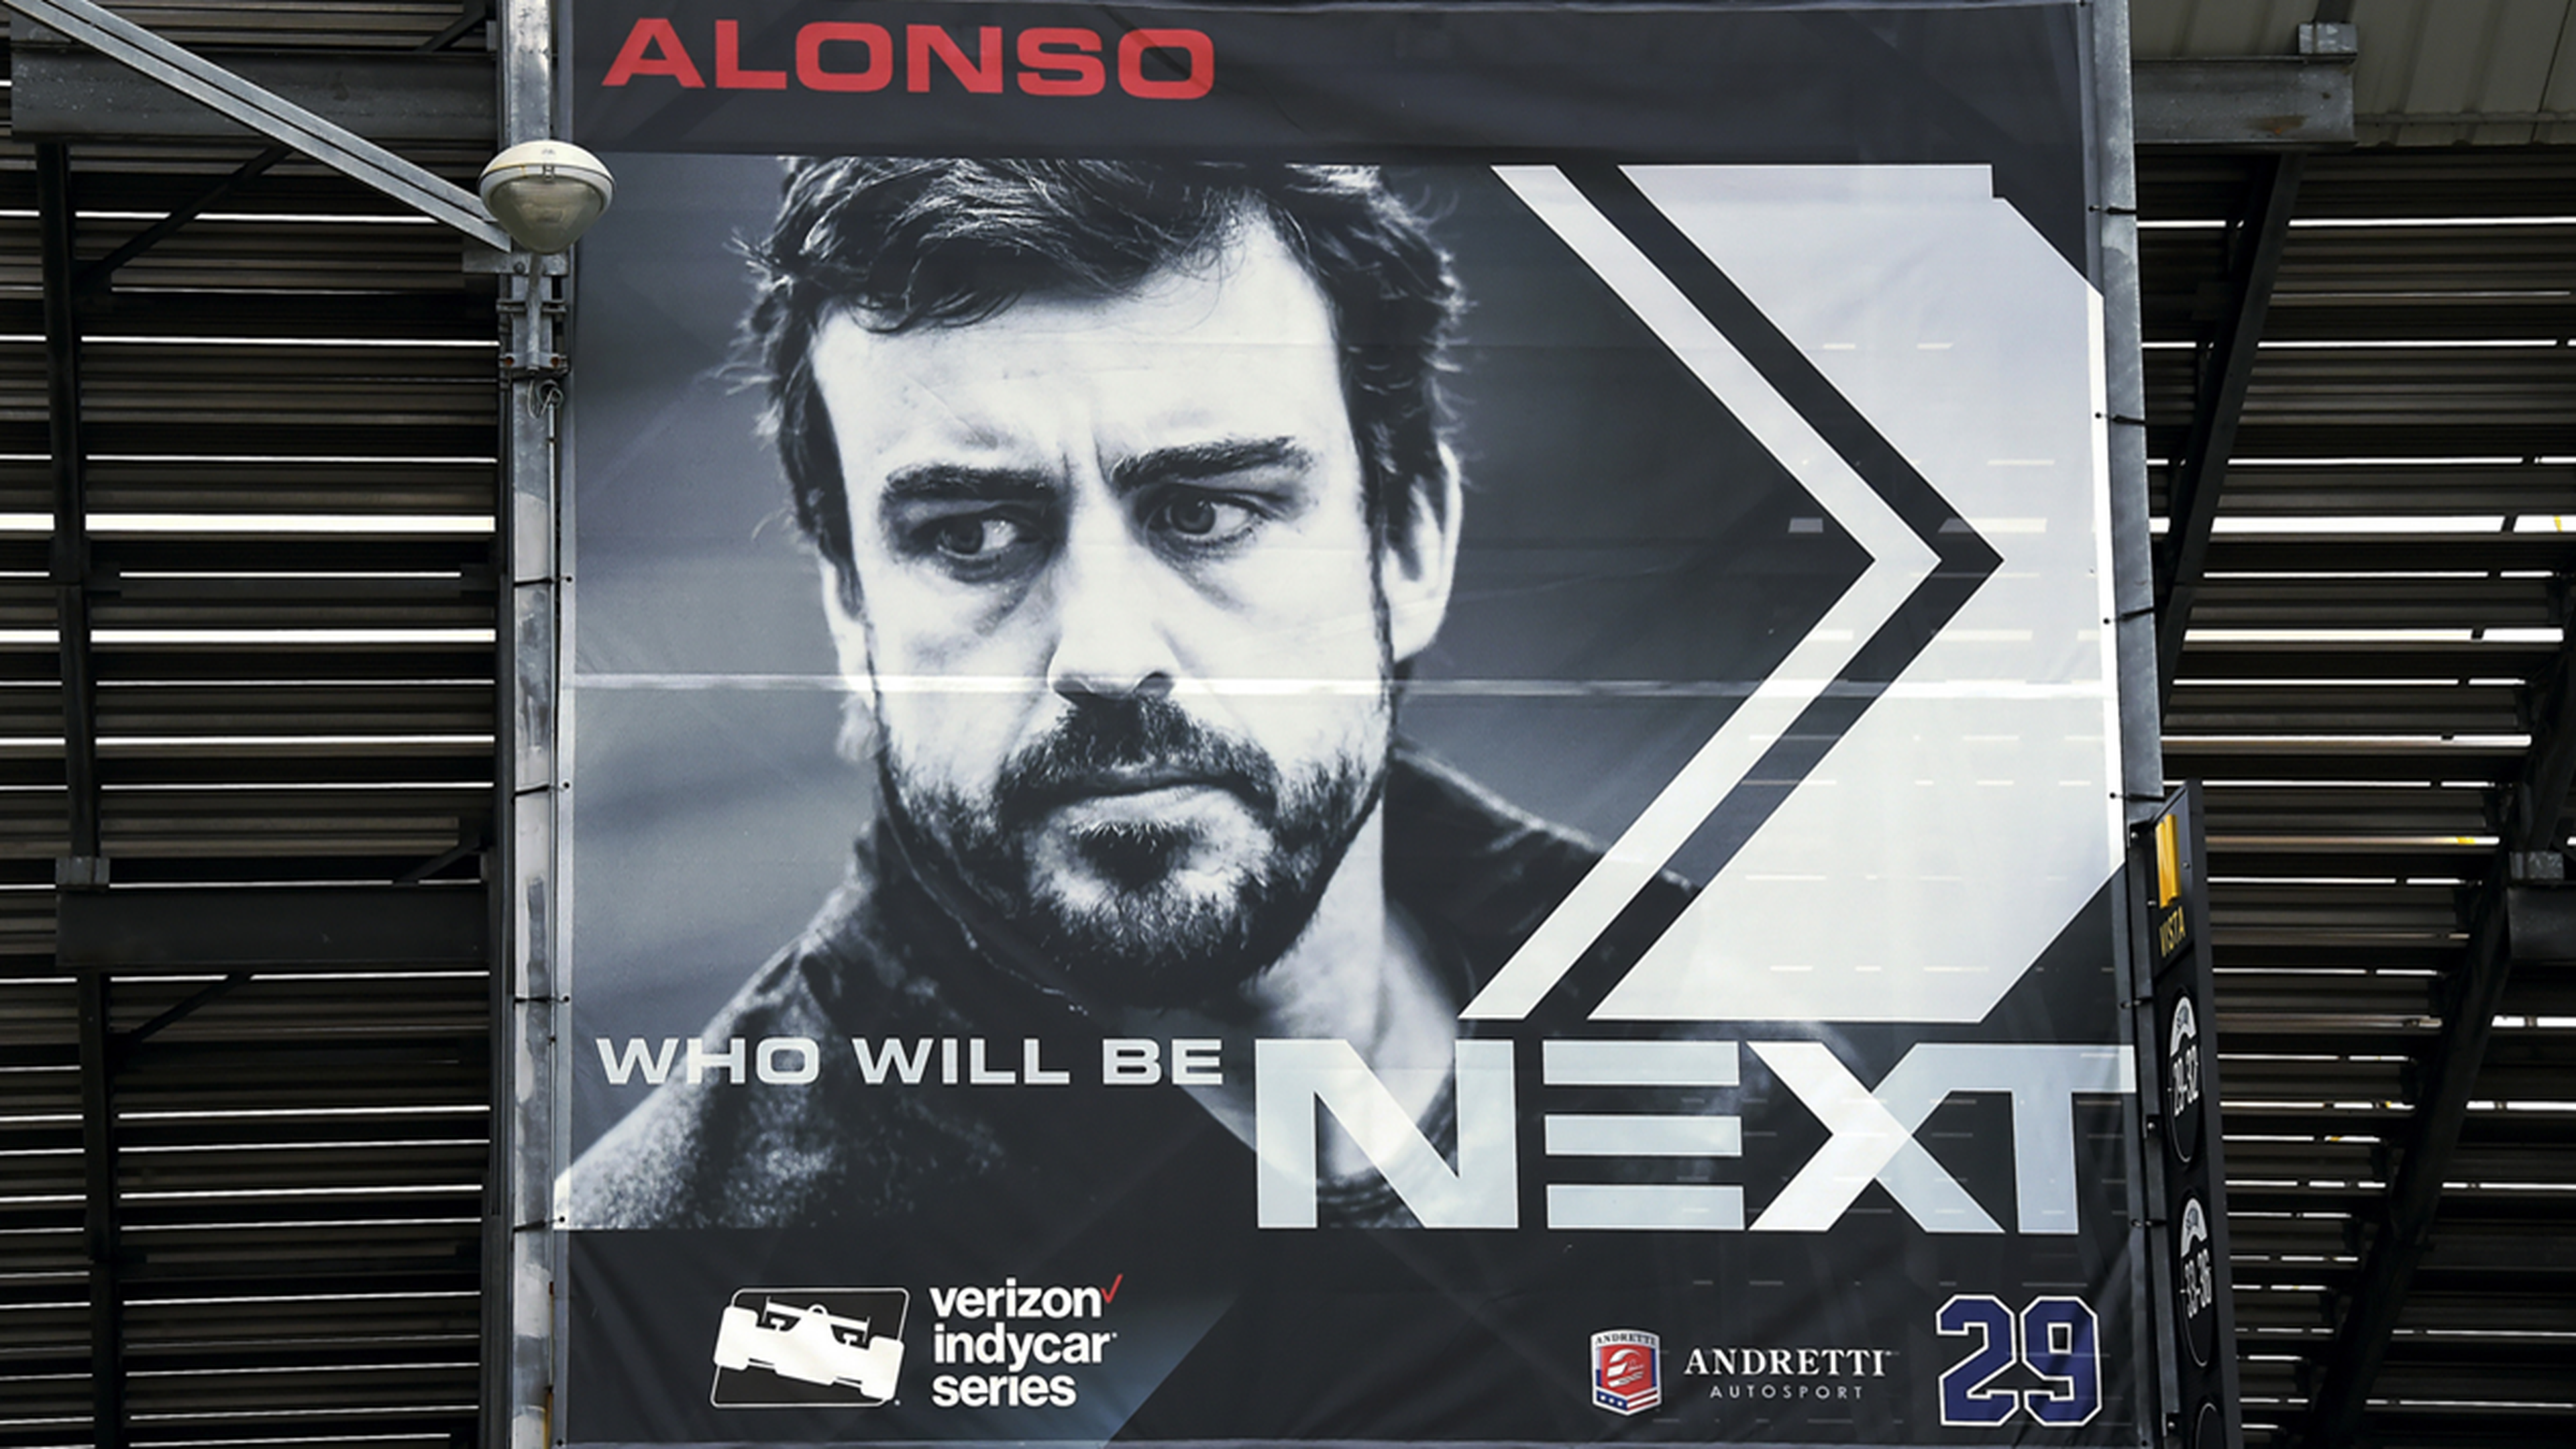 Alonso, segundo favorito en apuestas para ganar la Indy 500